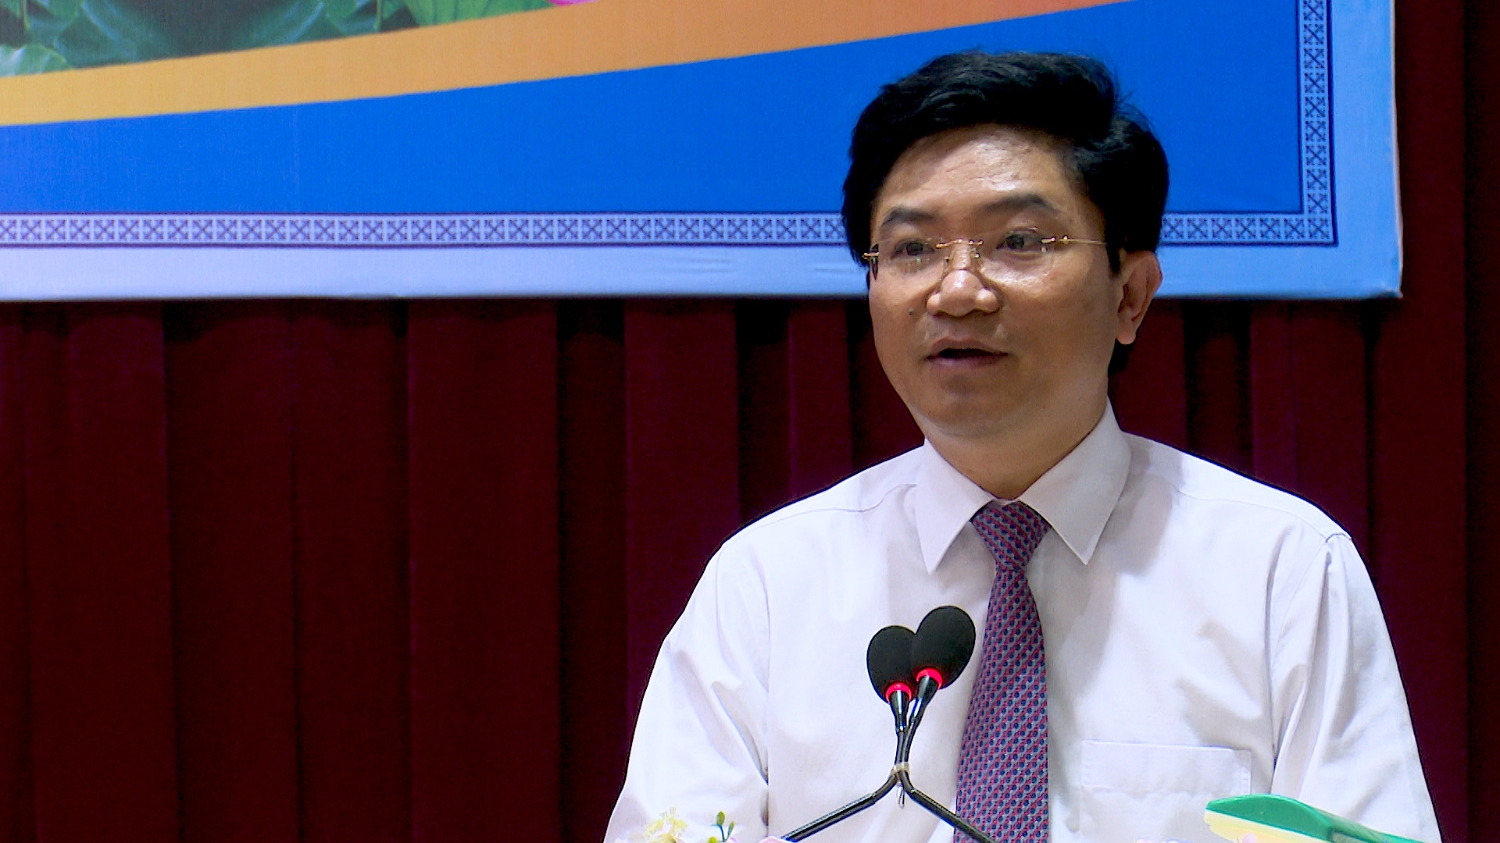 Đồng chí Trương An Ninh, Ủy viên Ban Thường vụ Tỉnh ủy, Bí thư Thị ủy phát biểu khai mạc sơ kết 5 năm thực hiện chỉ thị 05 của Bộ Chính trị